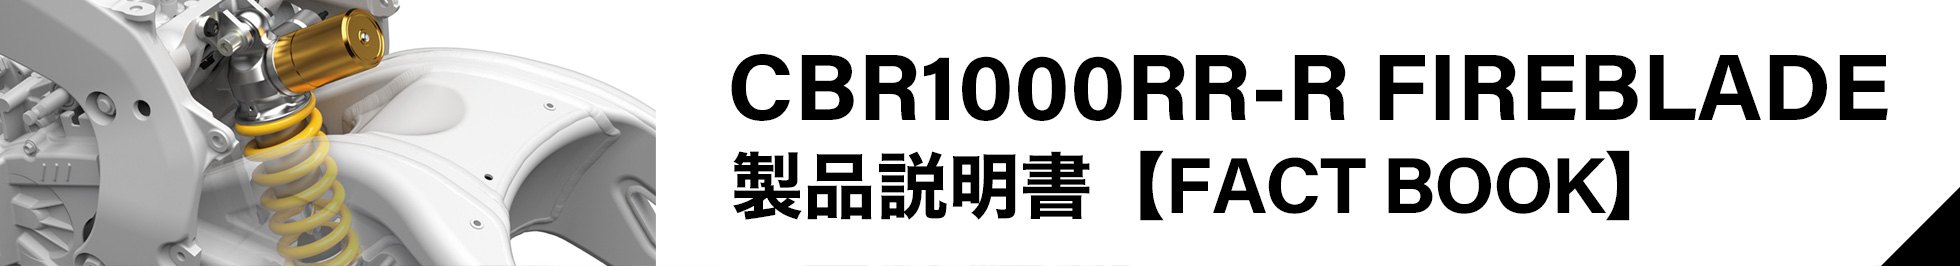 CBR1000RR-R FIREBLADE 製品説明書 【FACT BOOK】